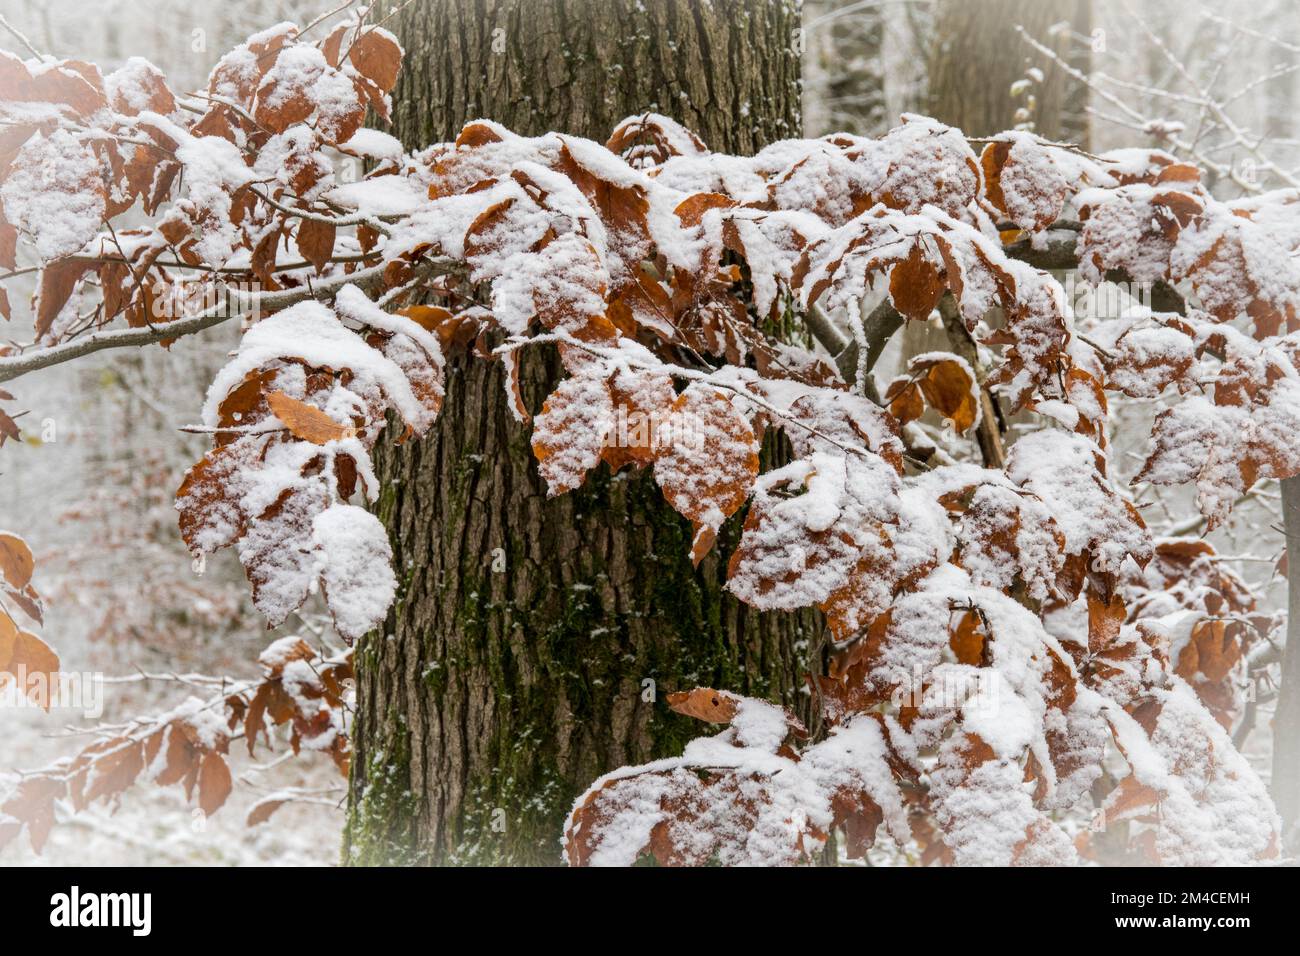 Feuilles de hêtre enneigées dans une forêt d'hiver Banque D'Images